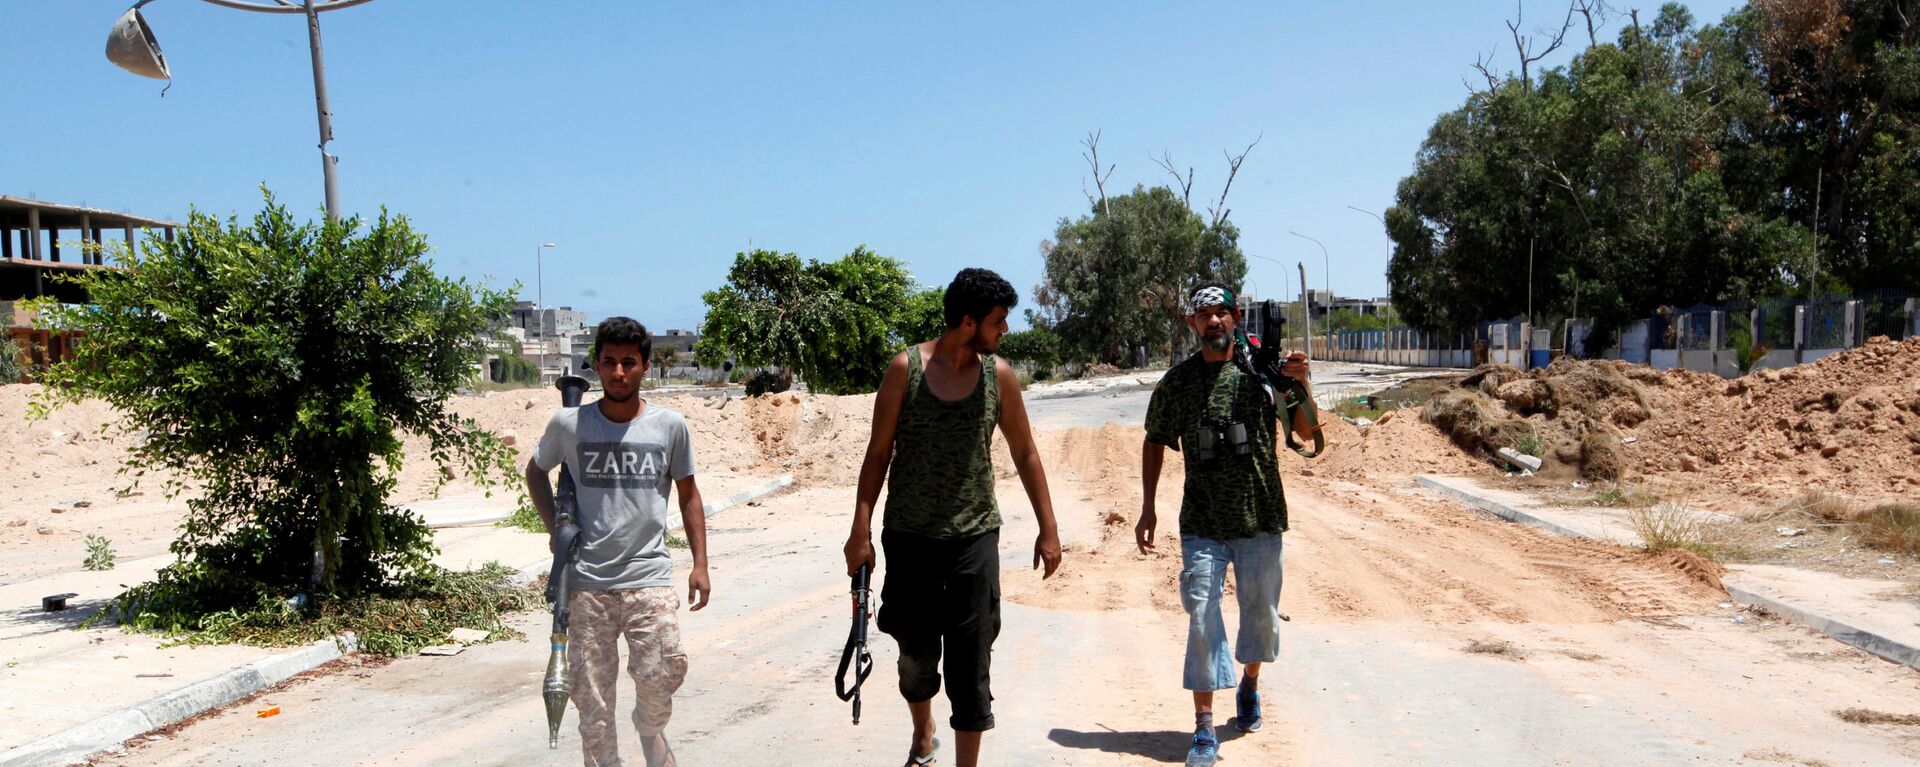 ليبيا - أفراد القوات الليبية خلال تواجدهم في مواقع المواجهة ضد تنظيم داعش في مدينة سرت، 15 أغسطس/ آب 2016 - سبوتنيك عربي, 1920, 15.09.2018